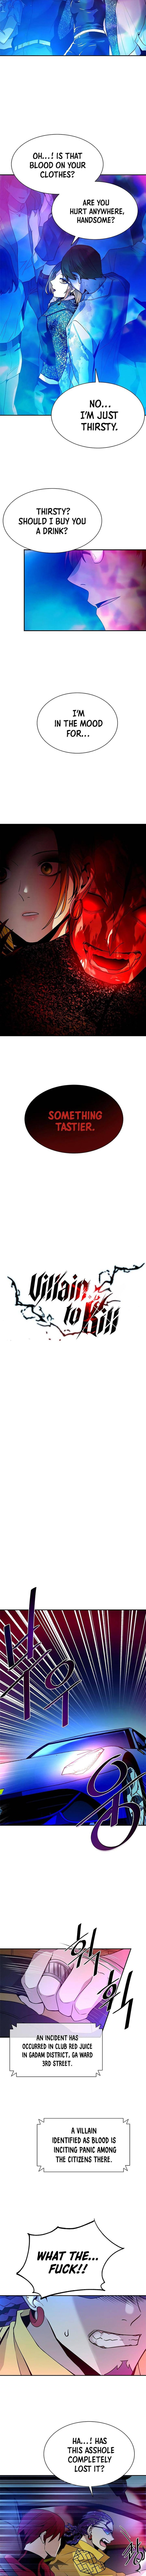 Villain To Kill 22 2